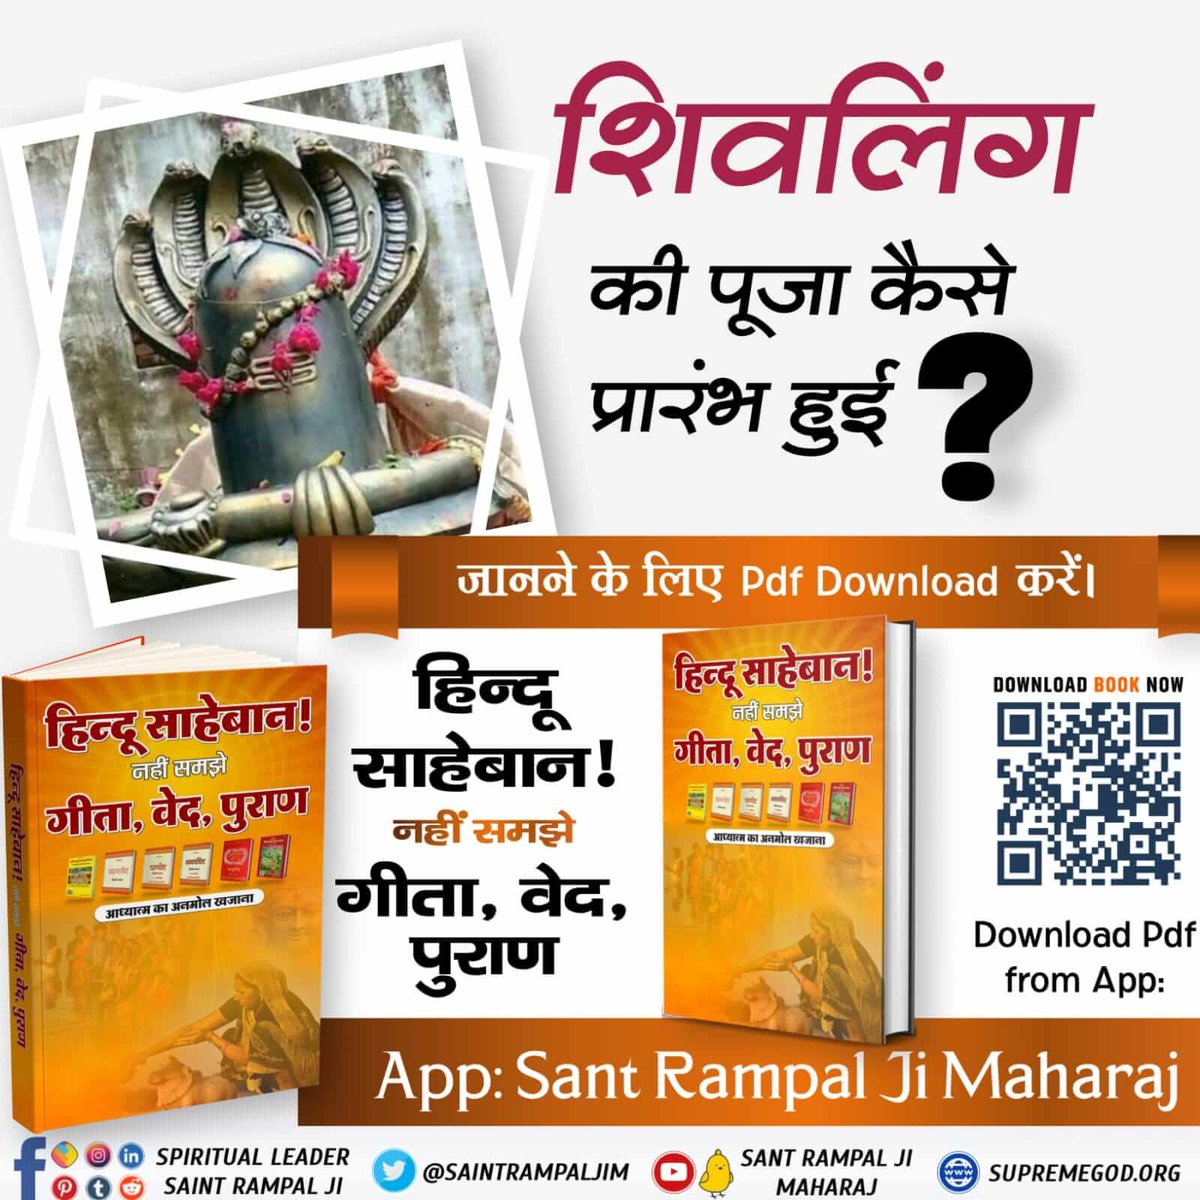 #धर्म_का_आधार_ग्रंथ_होते_हैं  कृपया उन्हीं से सीख लें  शिवलिंग की पूजा कैसे प्रारंभ हुई?
क्या शिवलिंग की पूजा से कोई लाभ संभव है?
जानने के लिए हिन्दू साहेबान! नहीं समझे गीता, वेद, पुराण पुस्तक को Sant Rampal Ji Maharaj App से डाउनलोड करके पढ़ें।

@SrBachchan